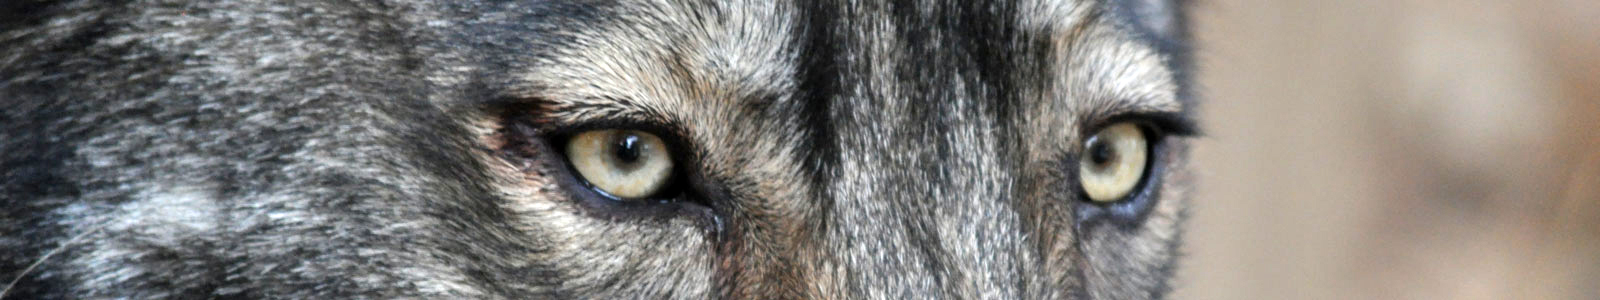 Texas Wolfdog Project Emily Kuhn Header Image